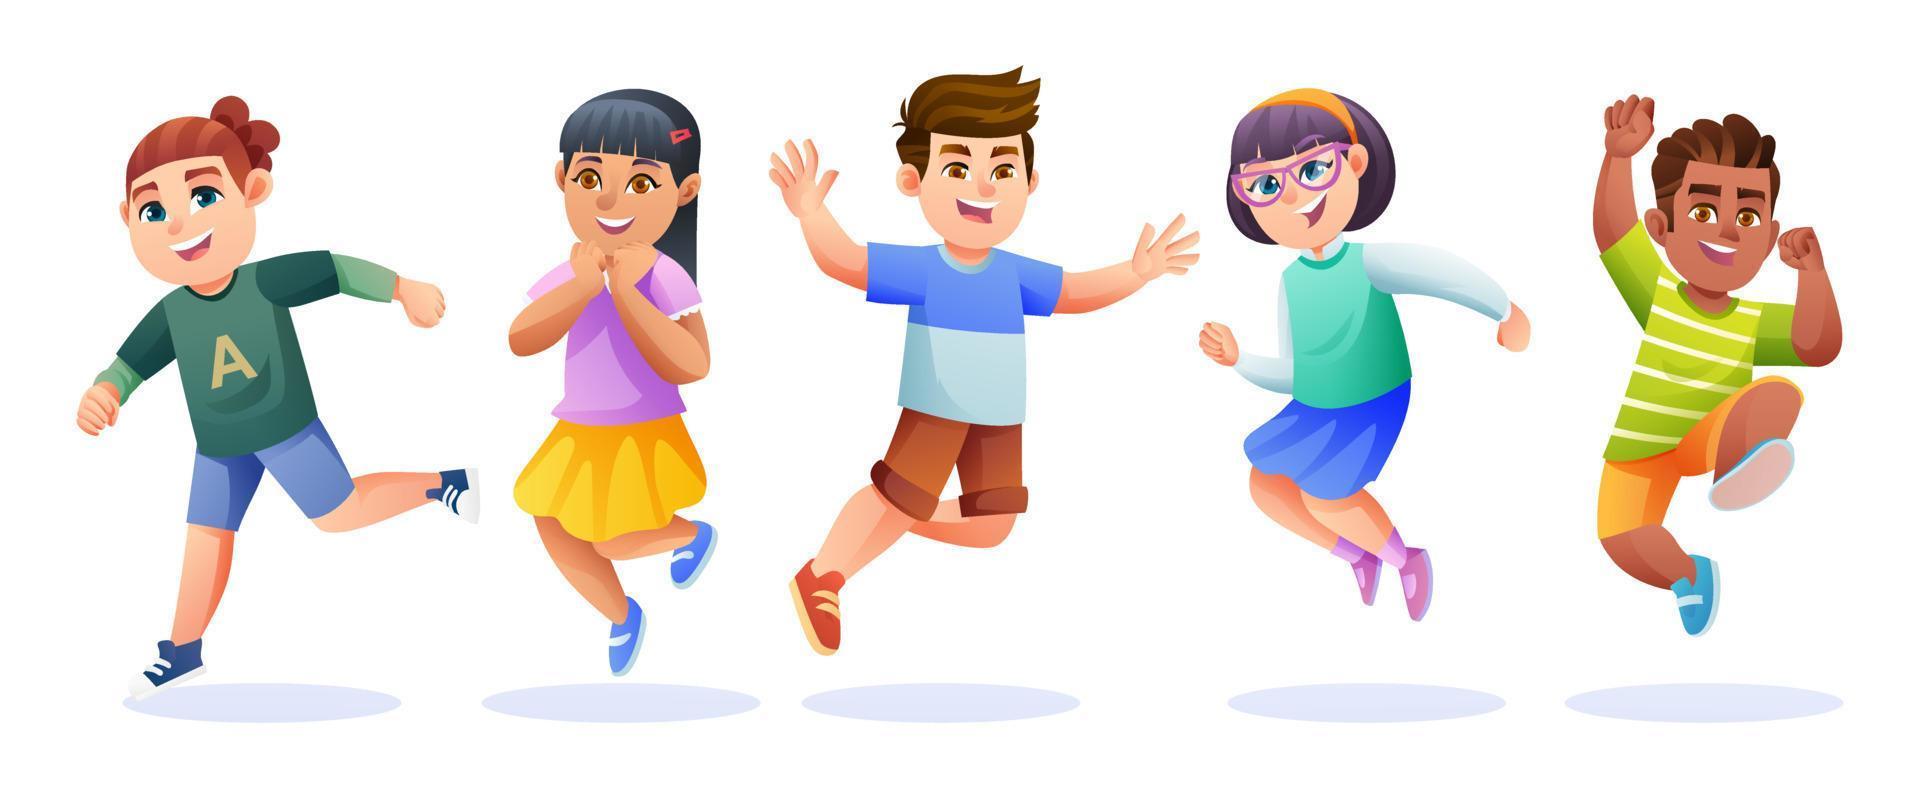 crianças alegres pulando juntos ilustração dos desenhos animados vetor